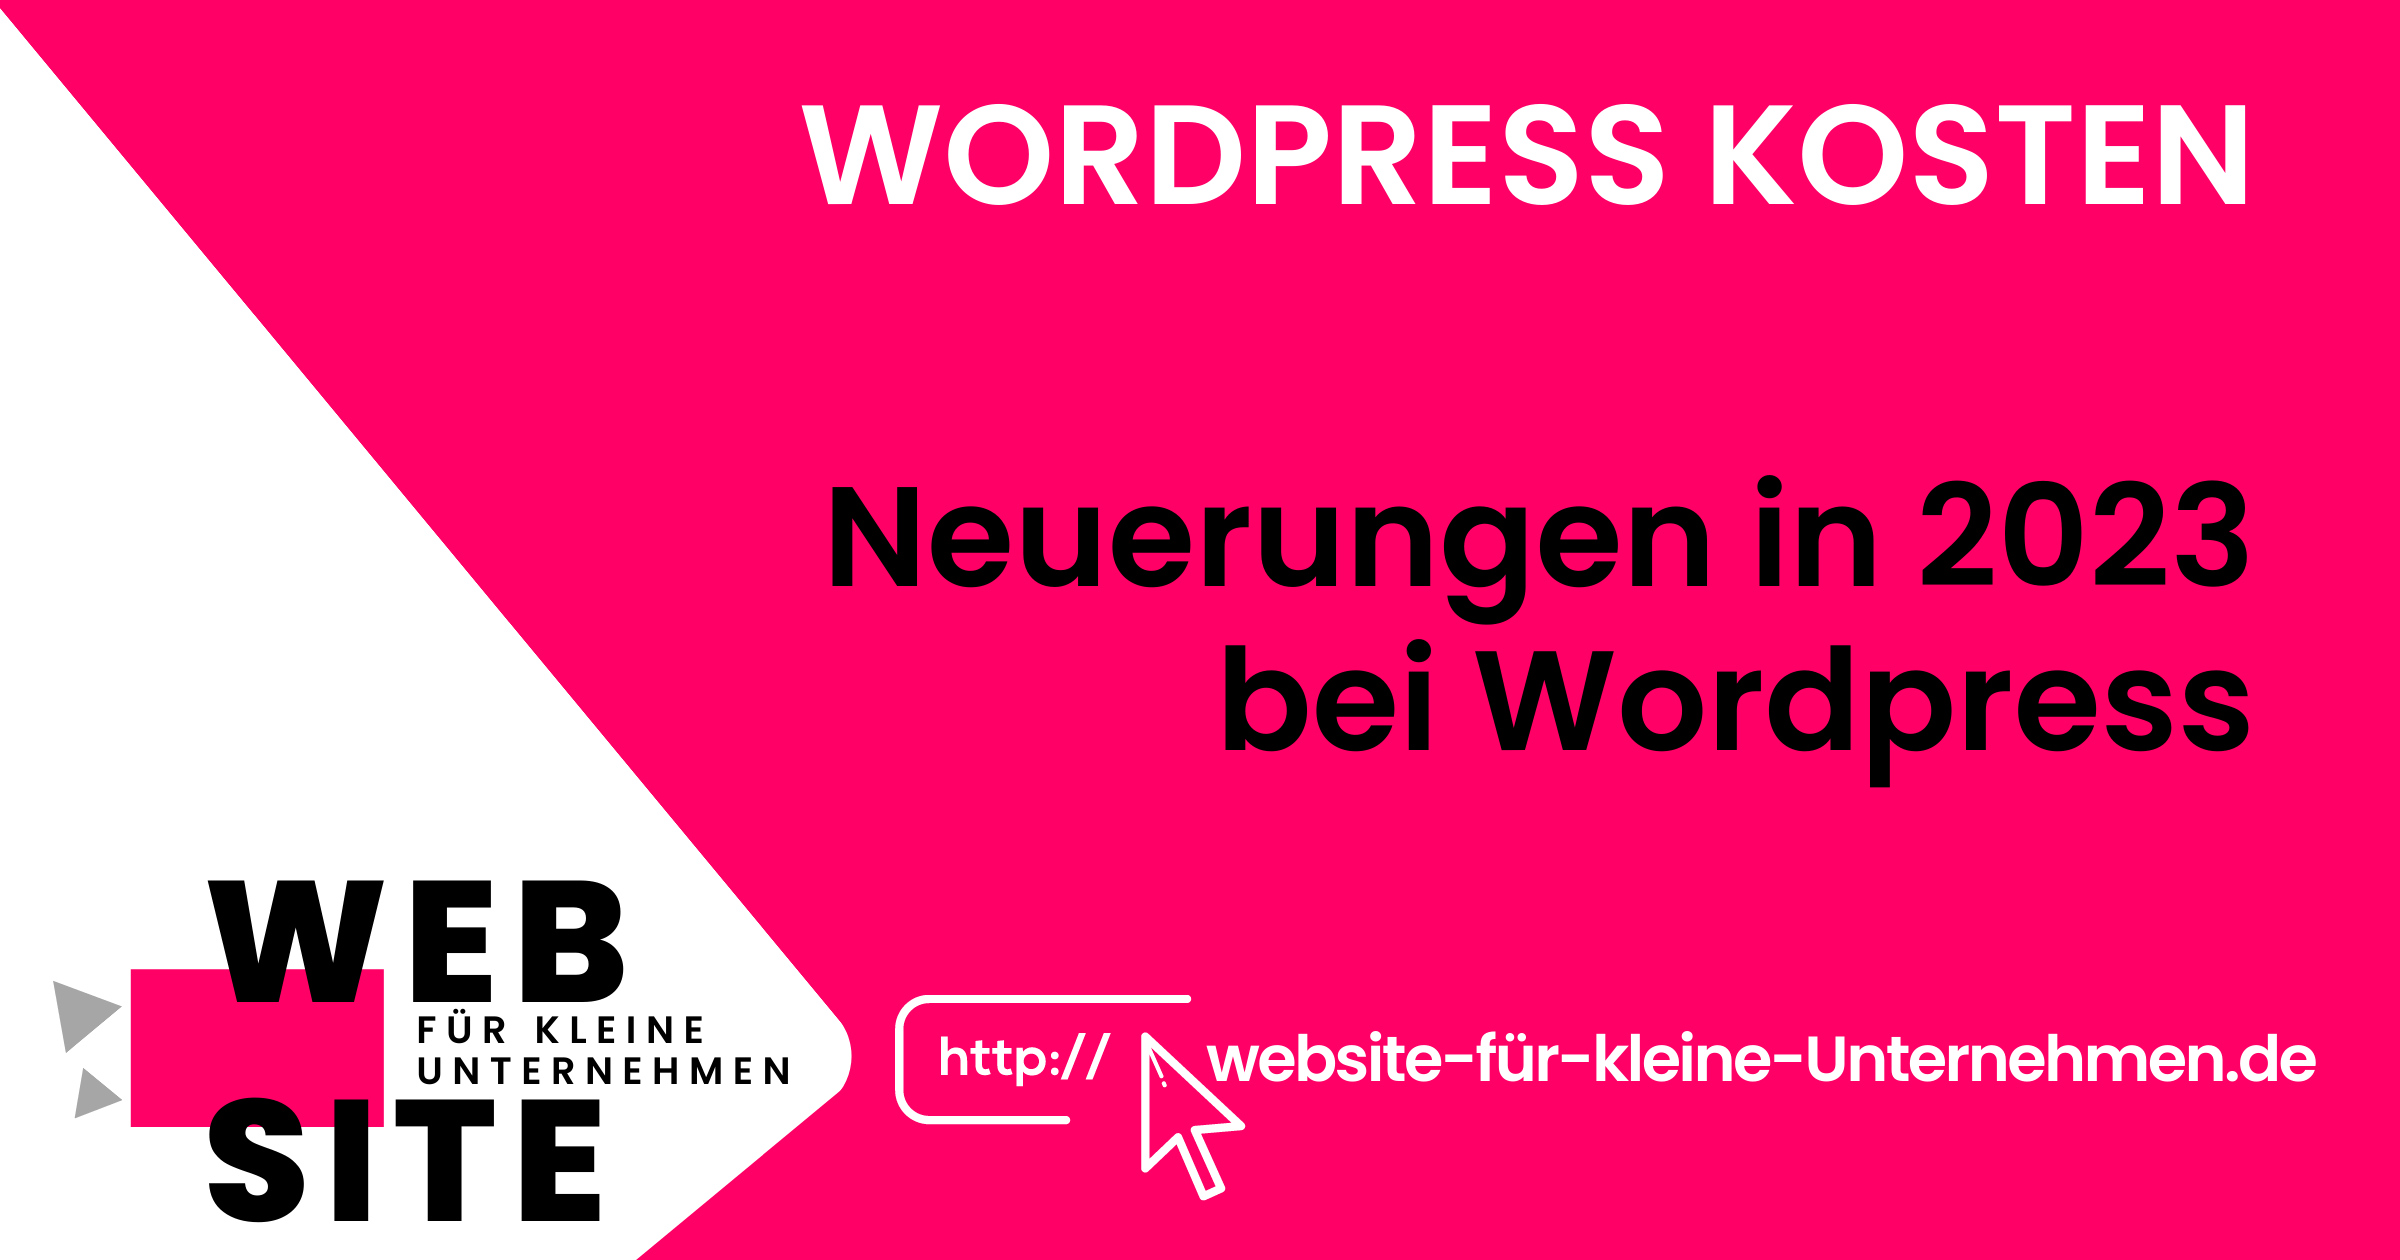 Wordpress Kosten - Website für kleine Unternehmen - Neuerungen in 2023 bei WordPress